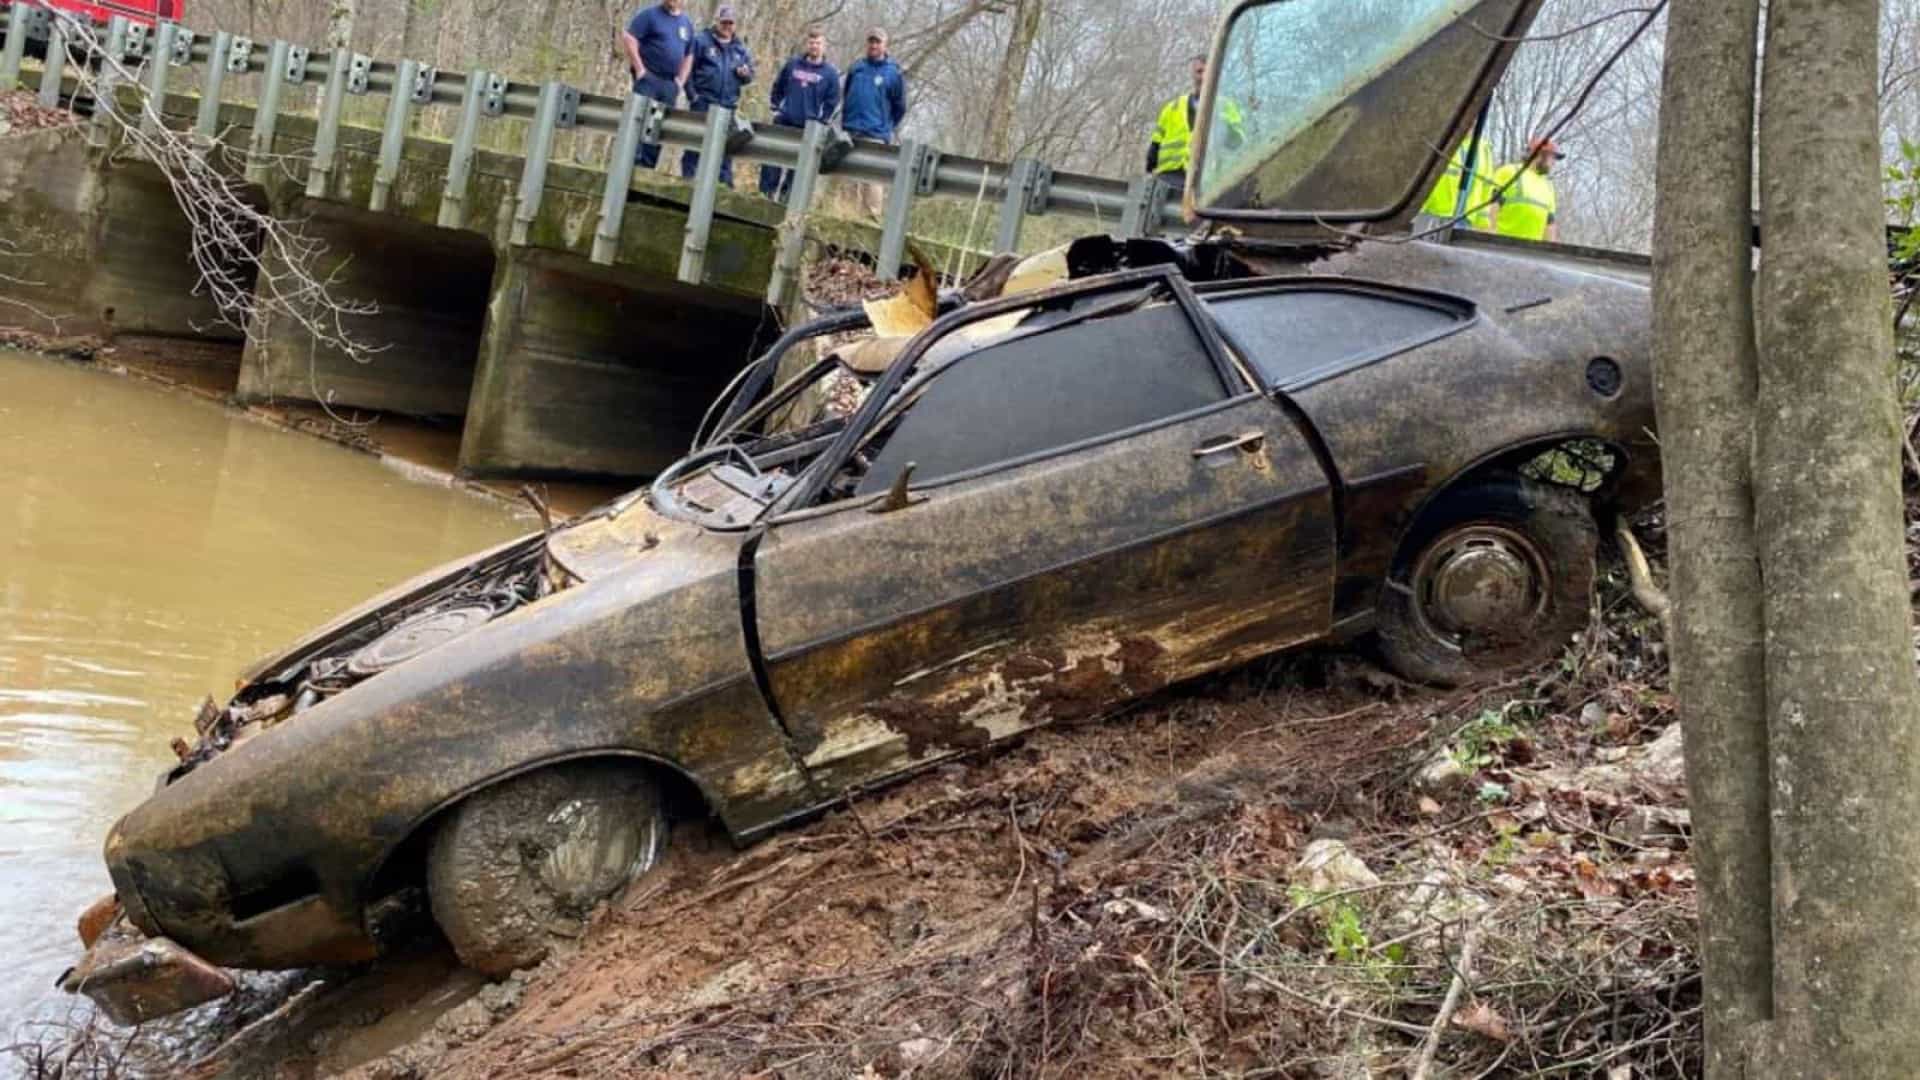 Estudante e carro desaparecidos desde 1976 encontrados em rio